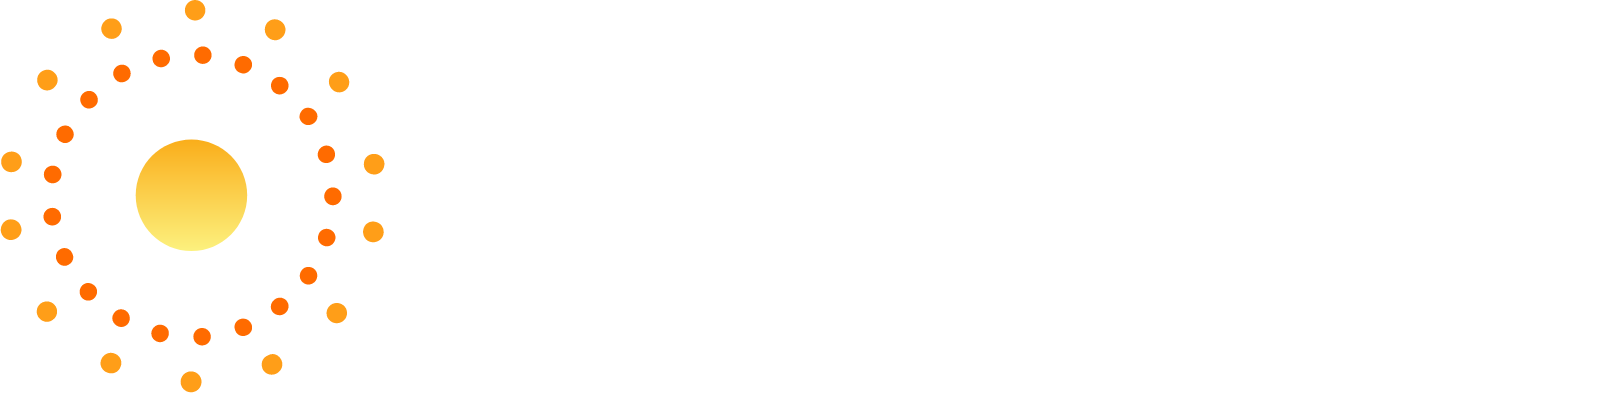 Heliogen logo large for dark backgrounds (transparent PNG)